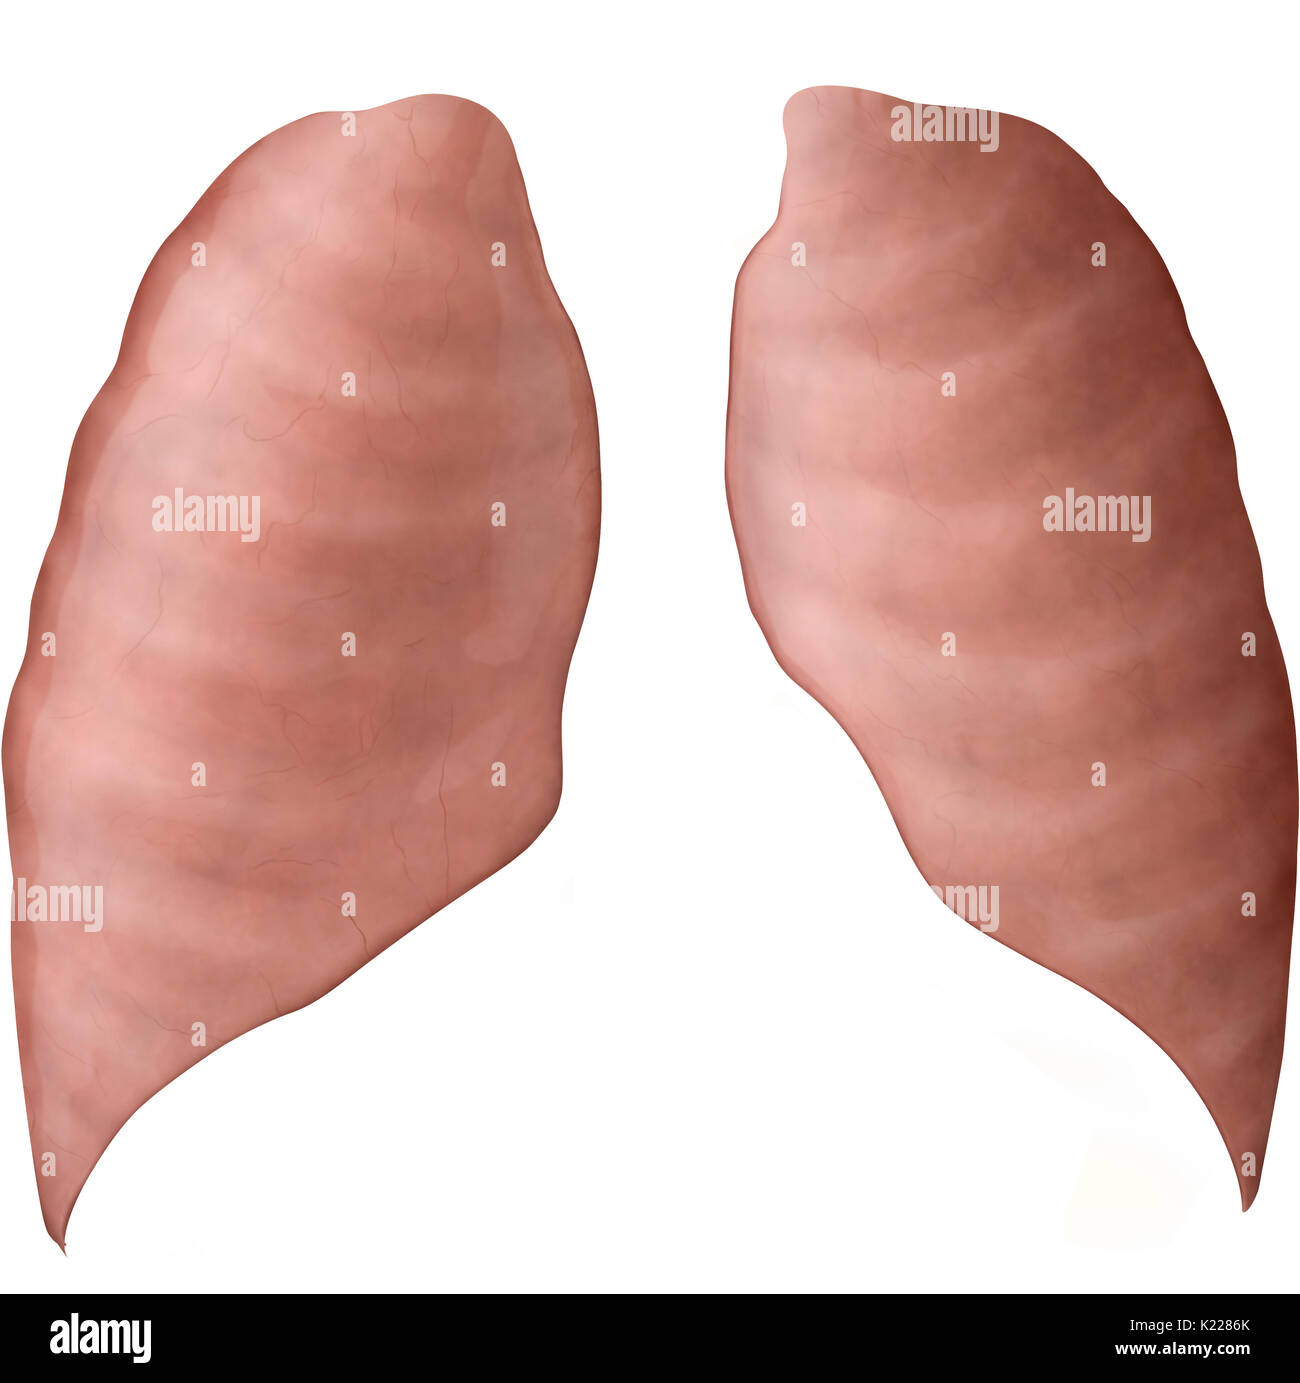 Gli organi respiratori formata da tessuto estensibile, in cui aria dal naso e cavità orale è portato, garantendo l'ossigenazione del sangue. Foto Stock